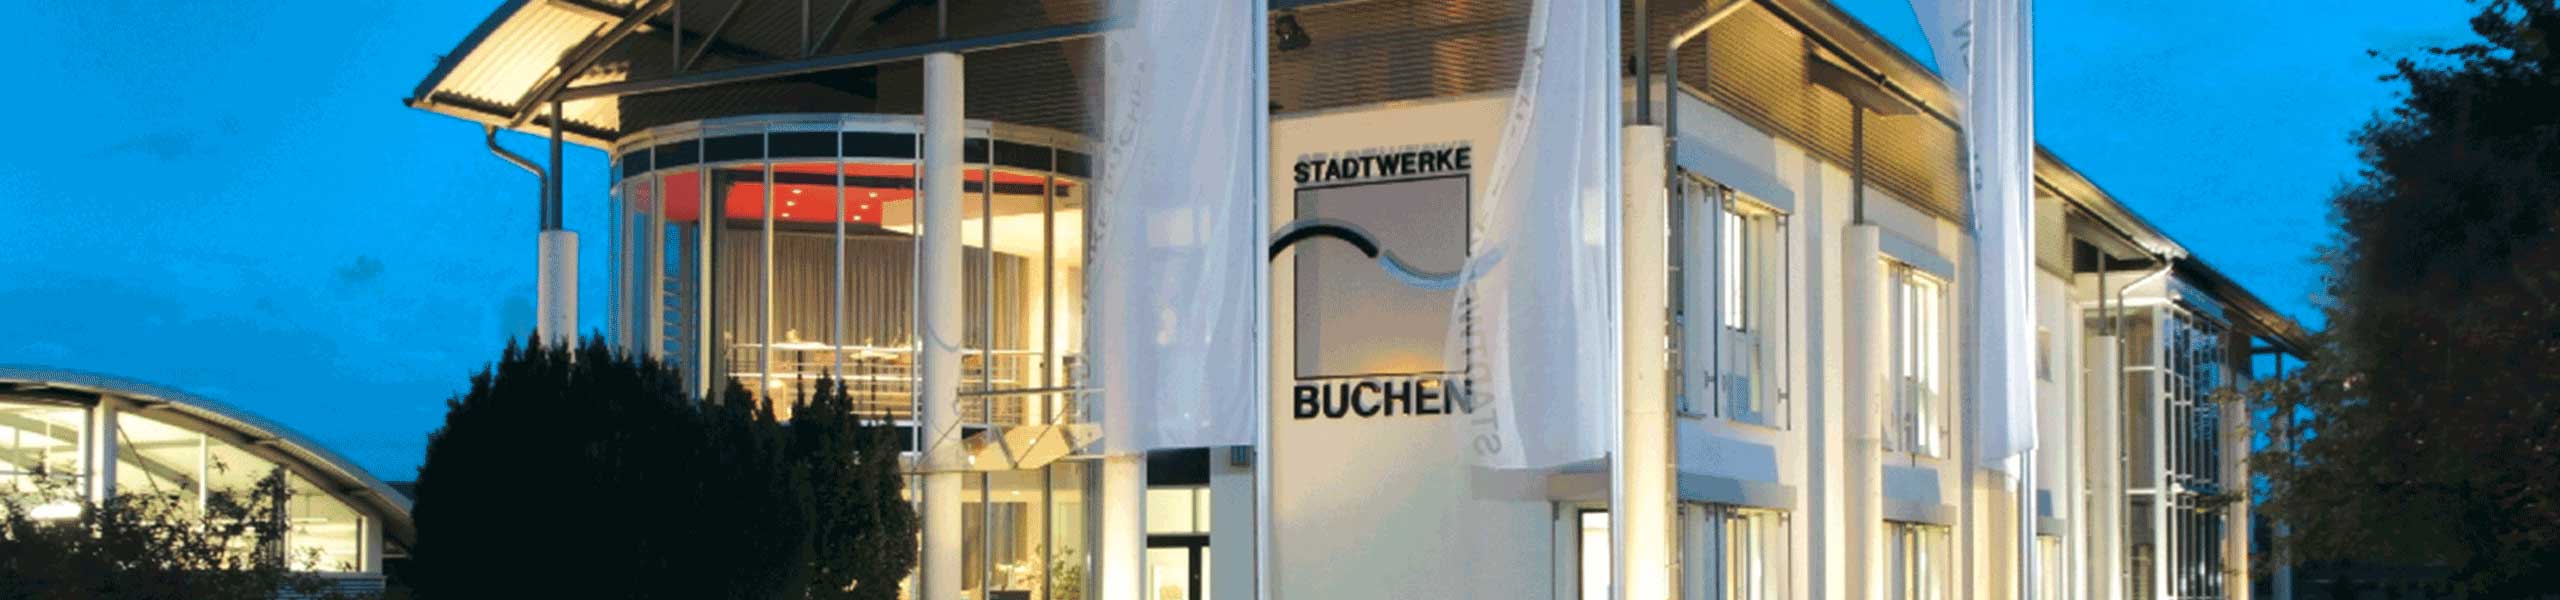 Stadtwerke Buchen GmbH & Co KG - Ihr Versorger vor Ort - Kunden der Stadtwerke Buchen profitieren im Dezember von der Soforthilfe Gas und Wärme